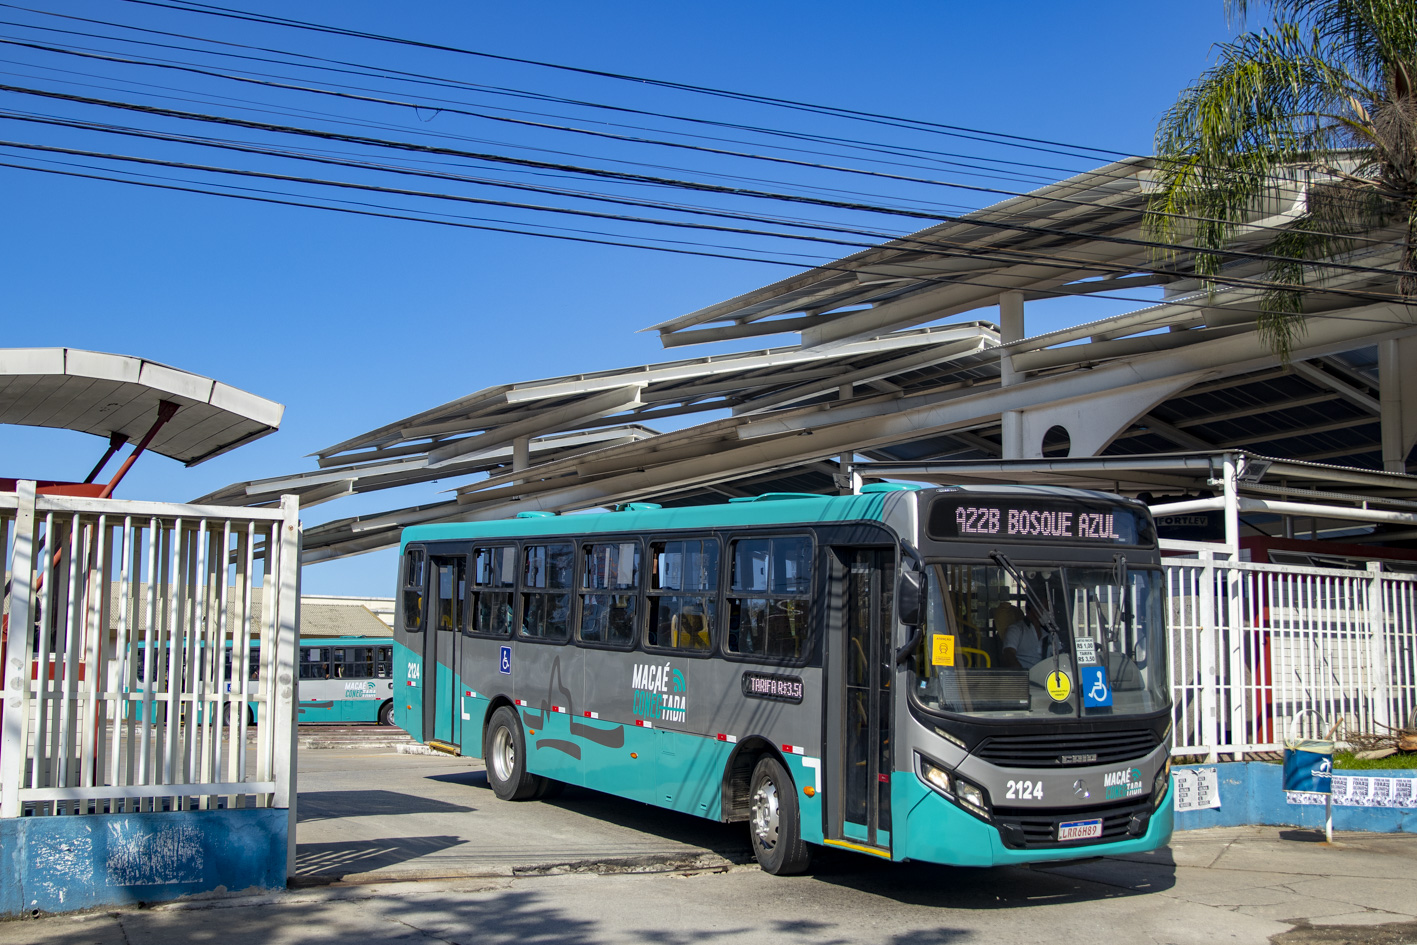 Desde essa manhã, mais 40 ônibus com wifi estão circulando para atender às exigências feitas pela Prefeitura